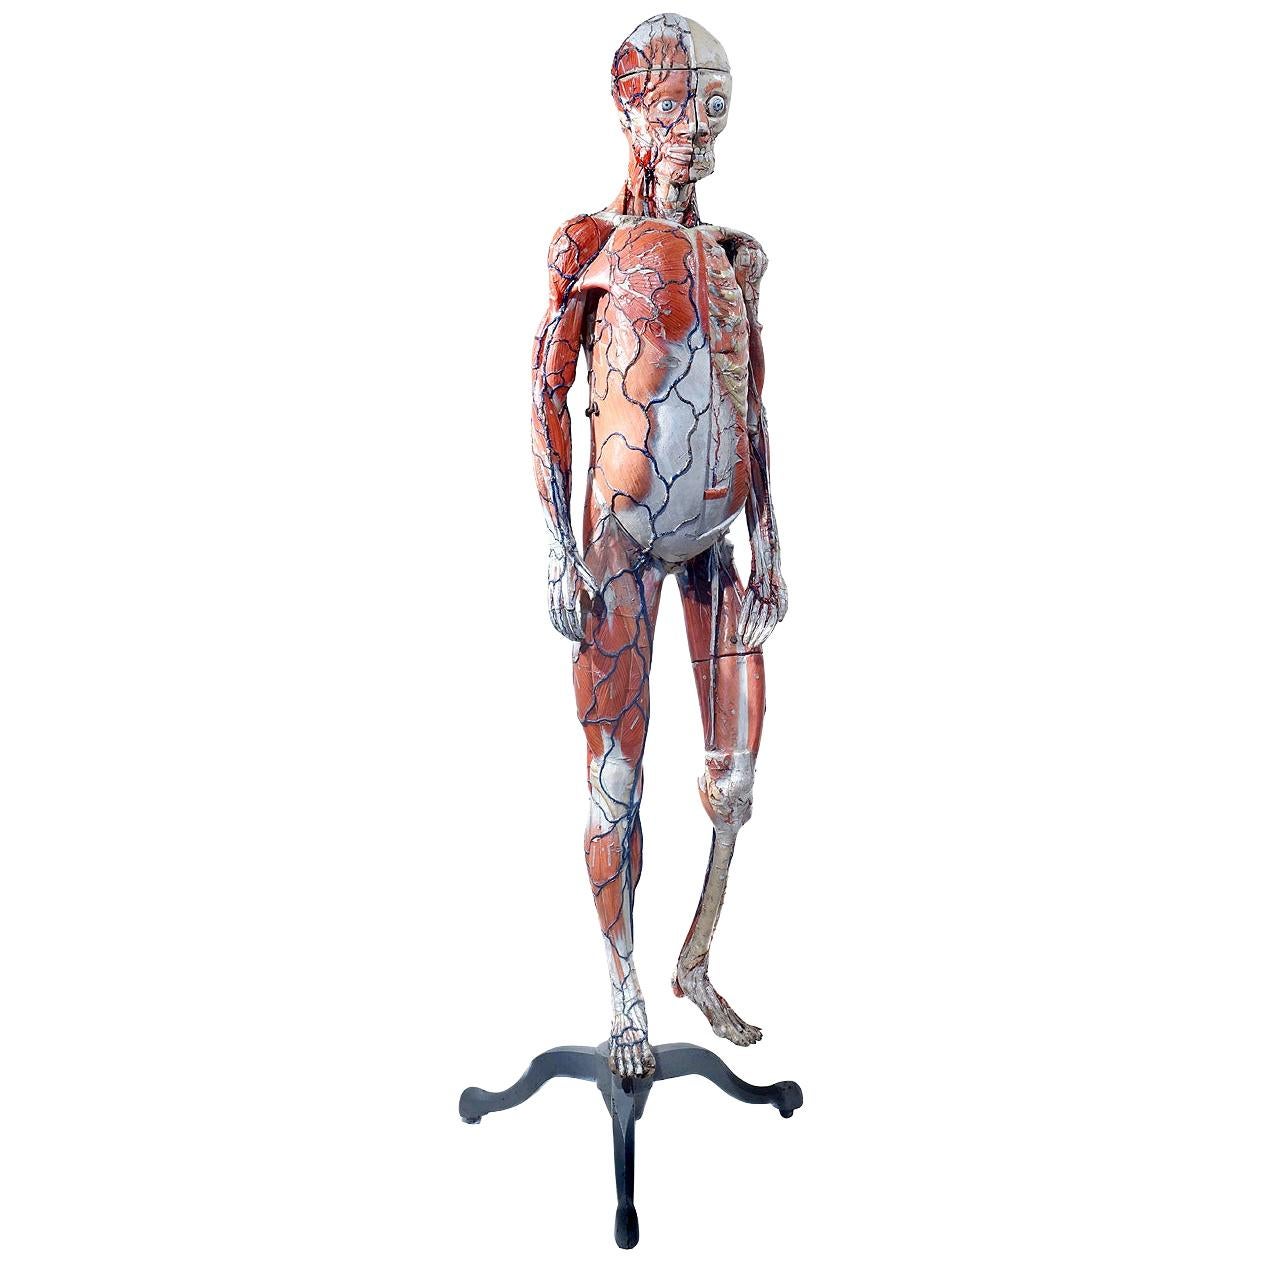 Rare 1800s Dr. Auzoux Anatomical Model